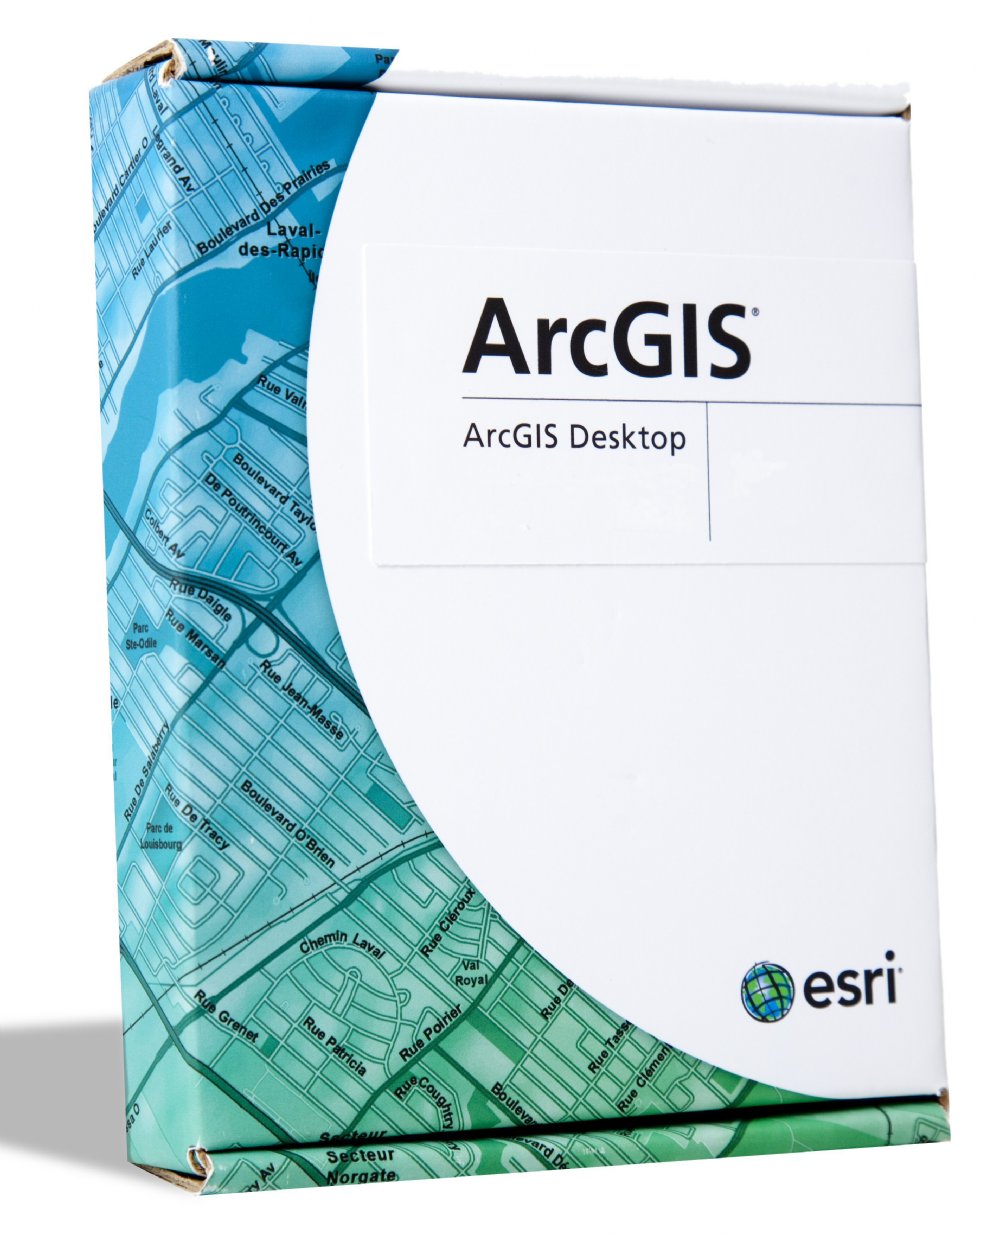 Arcgis 9.3 full version crack